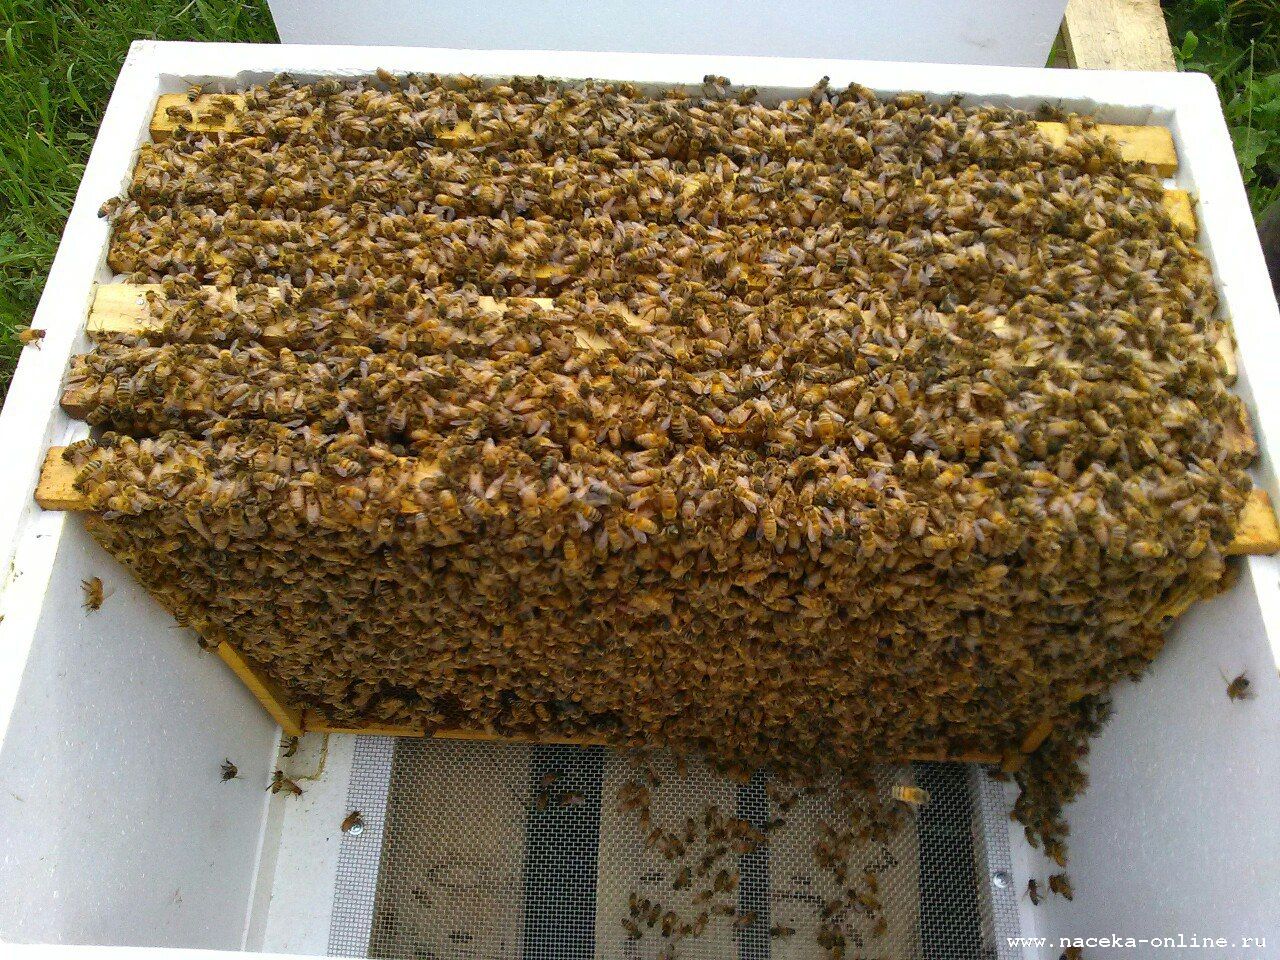 Купить пчел мордовия. Пчелопакеты Бакфаст. Пчелопакеты украинской Степной пчелы. Пчелиный пакет. Бессотовый пчелопакет.